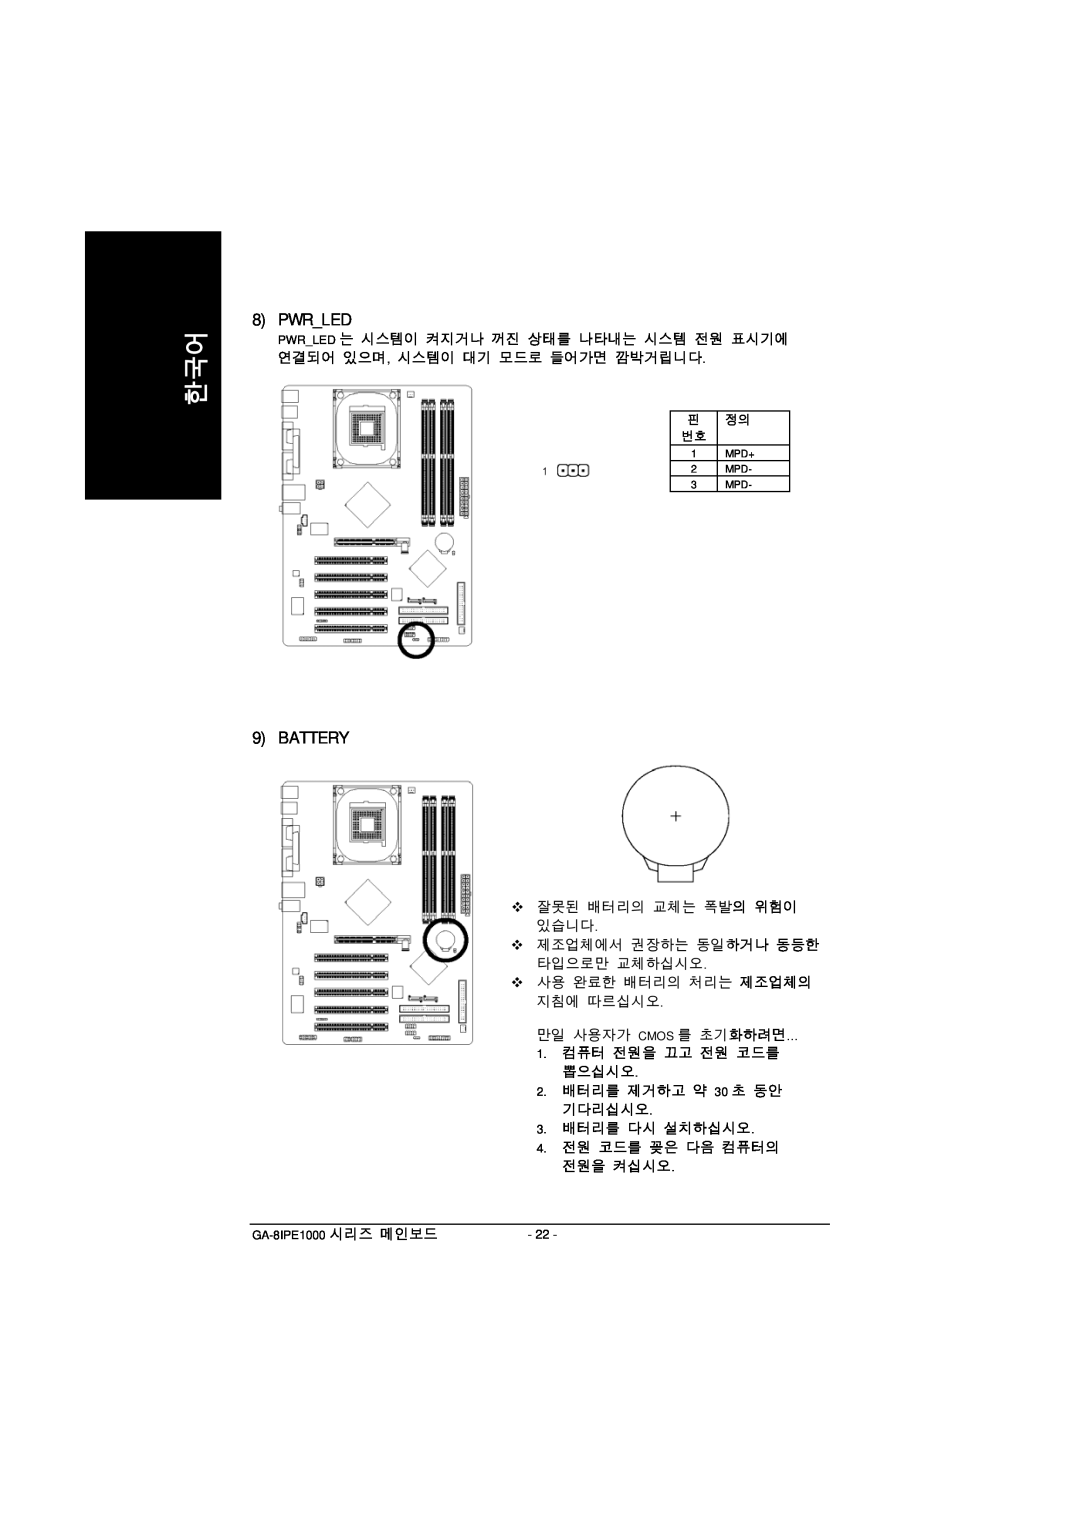 Intel GA-8IPE1000 manual Pwrled, Battery 